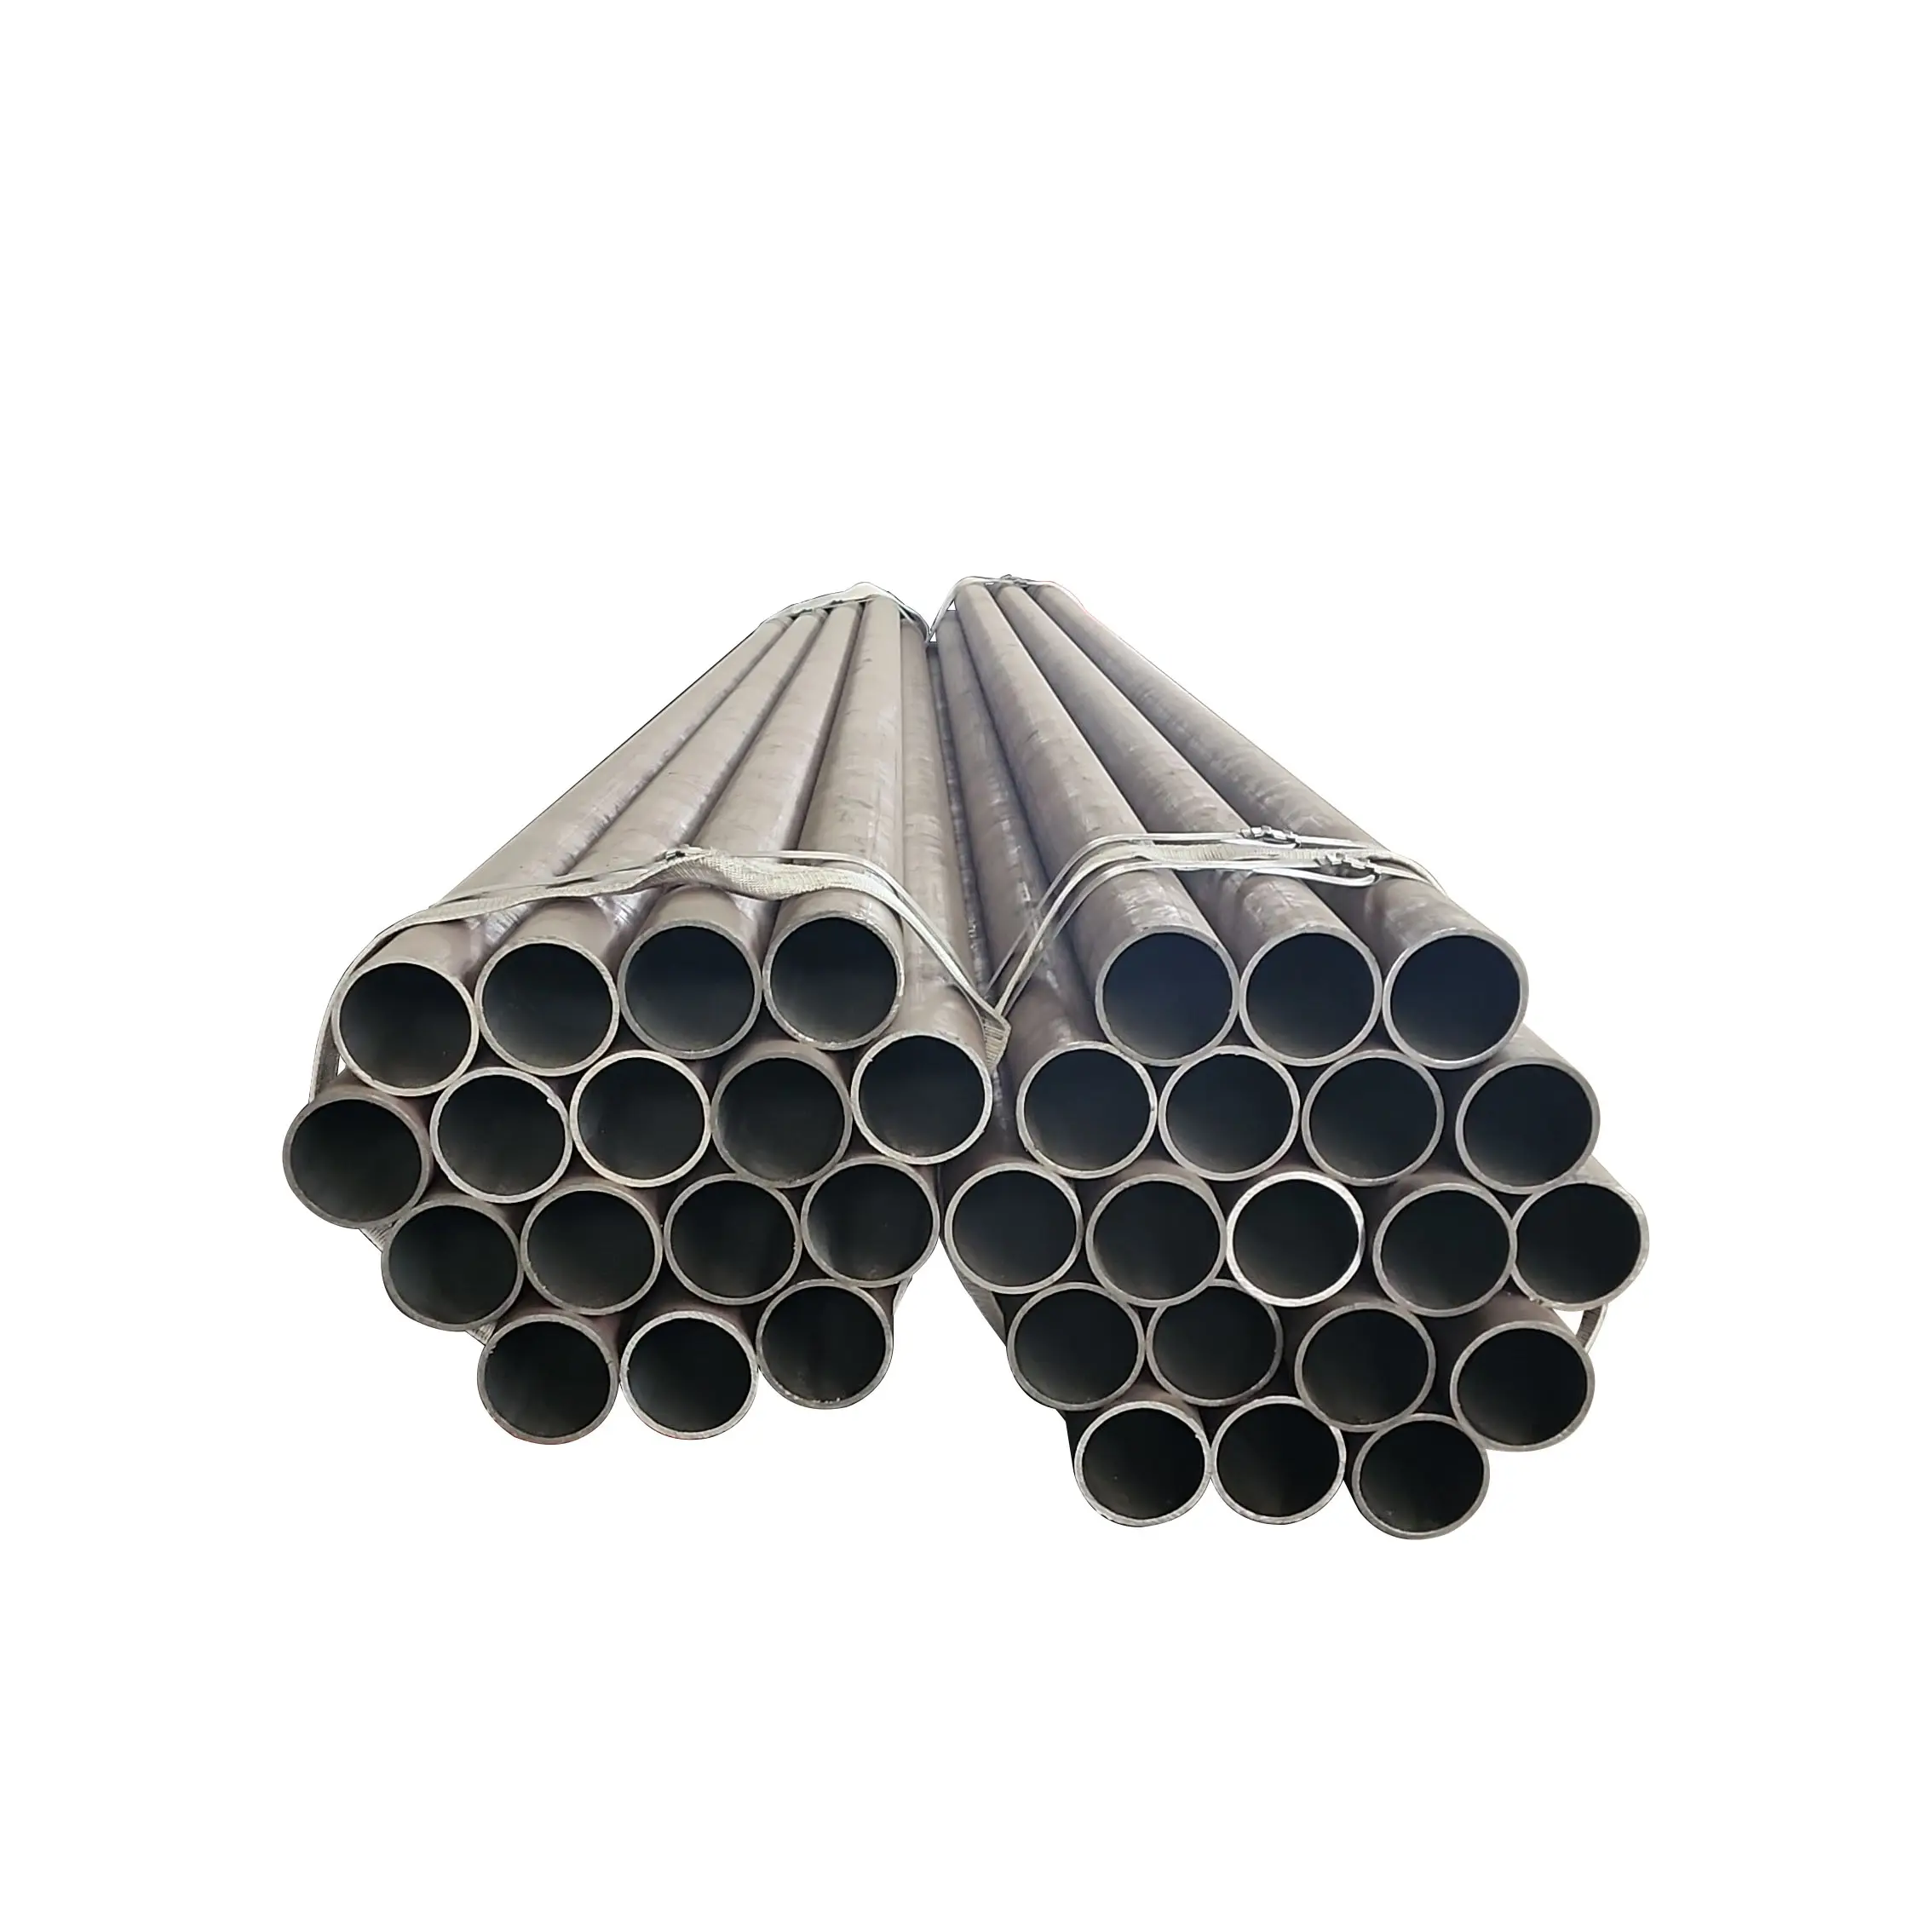 Vente en gros de tuyaux en acier au carbone de haute qualité ronds de grand diamètre personnalisés pour la construction d'oléoducs